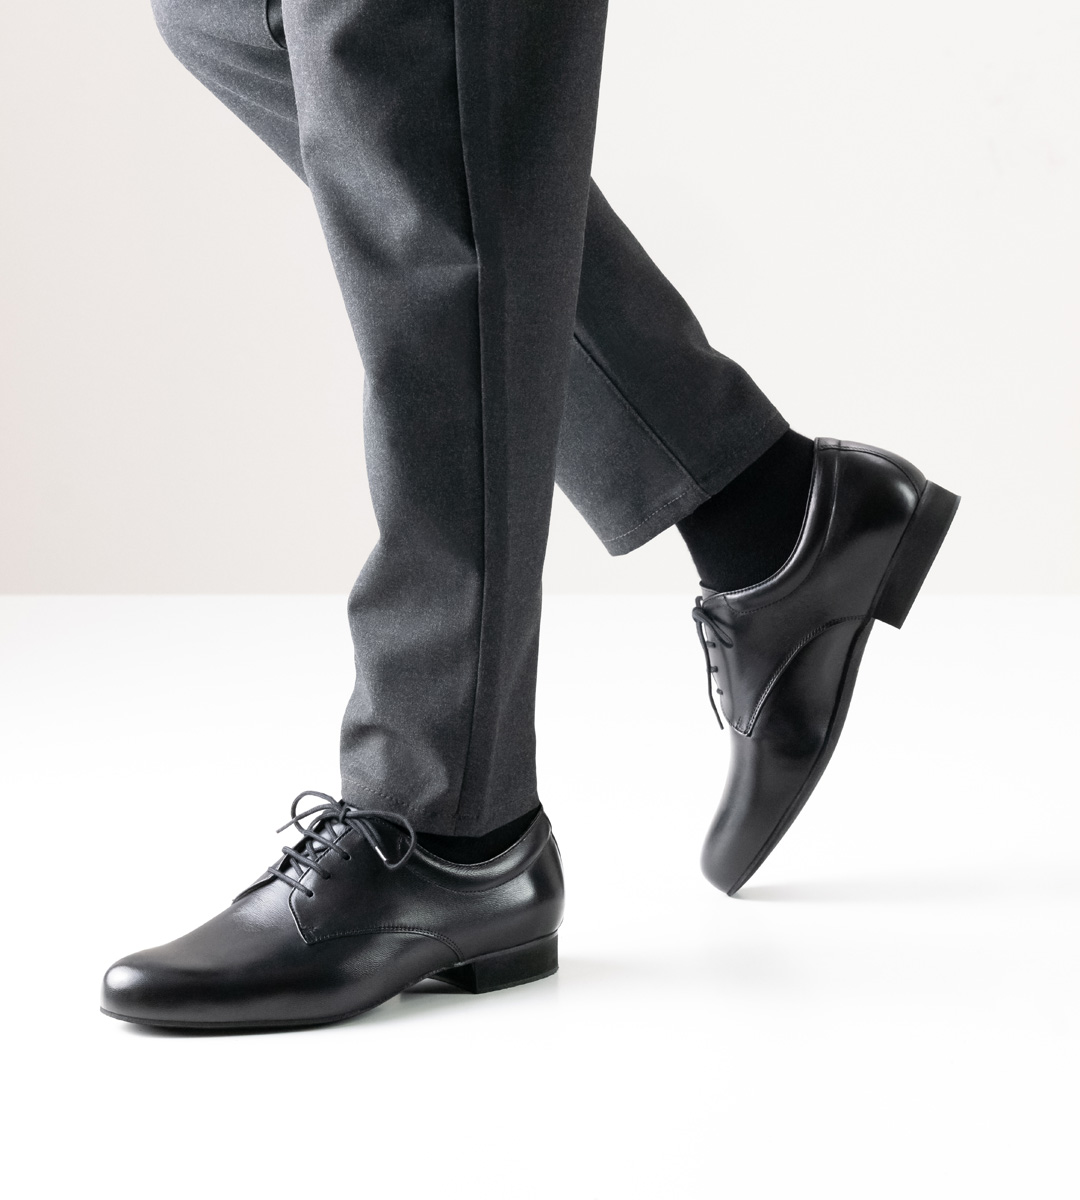 Chaussures de danse pour hommes pour pieds larges de Werner Kern pour semelles amovibles